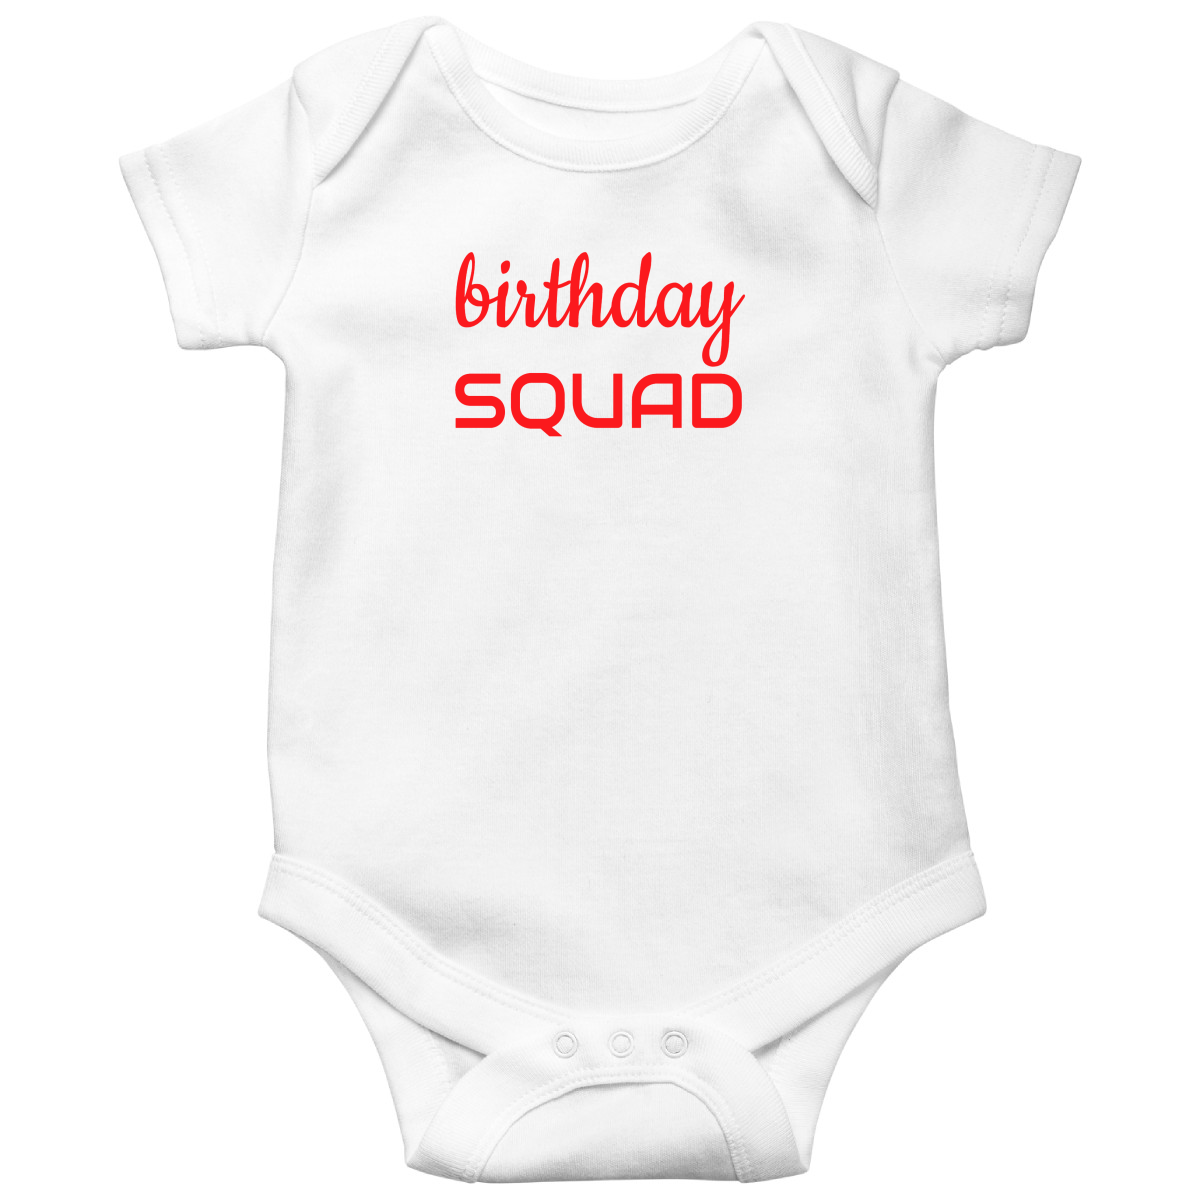 Birthday SQUAD Baby Bodysuits | White